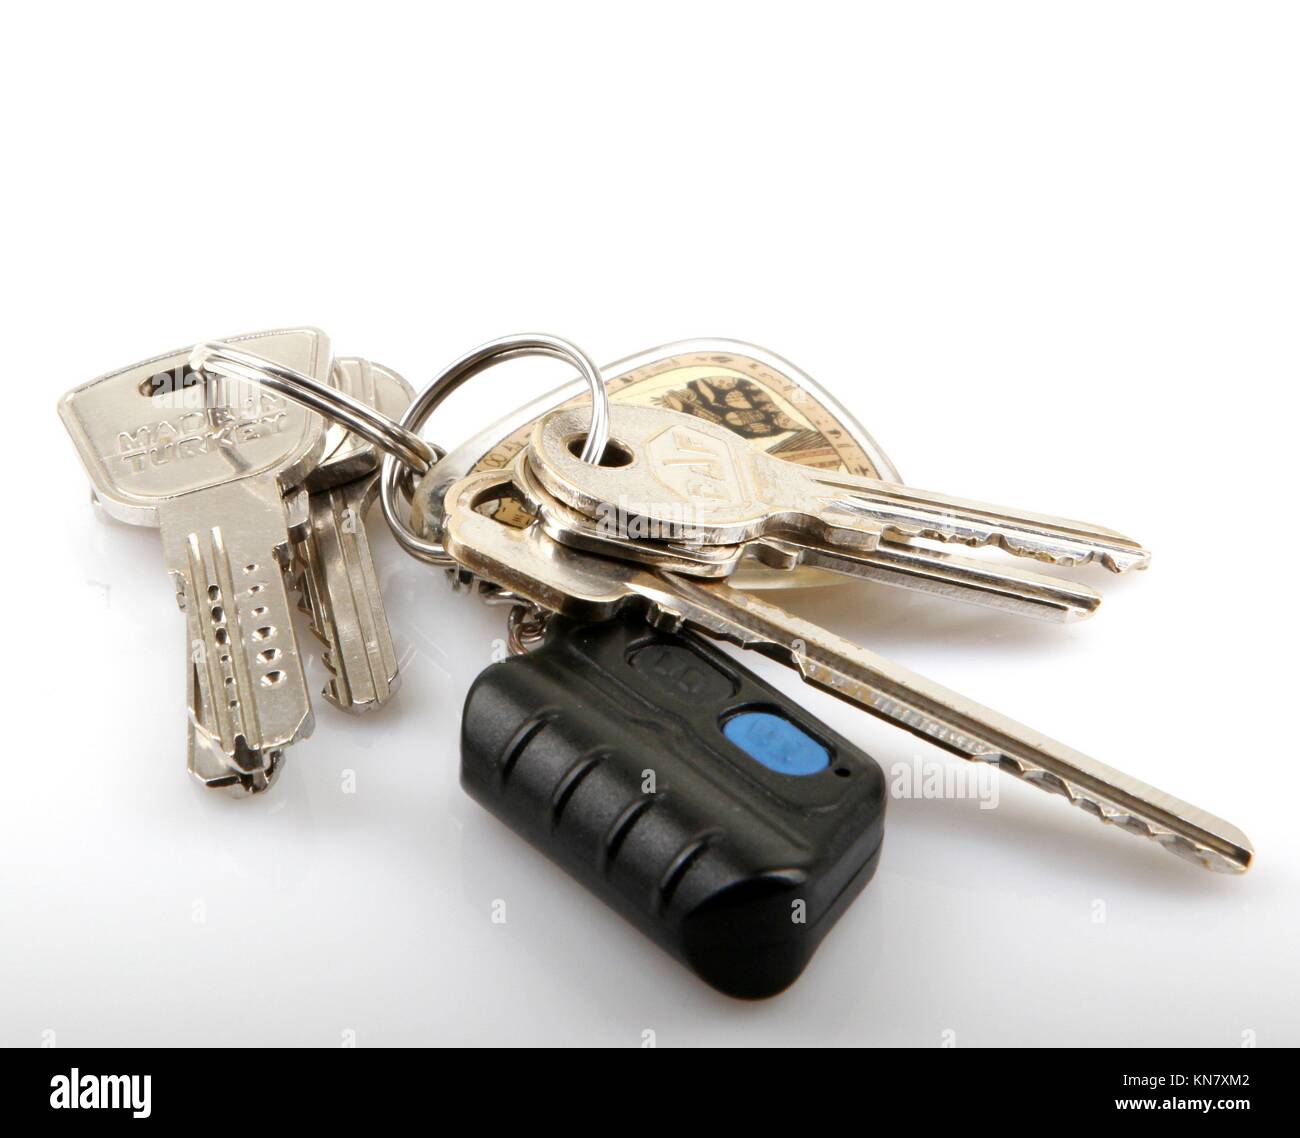 House keys. Stock Photo